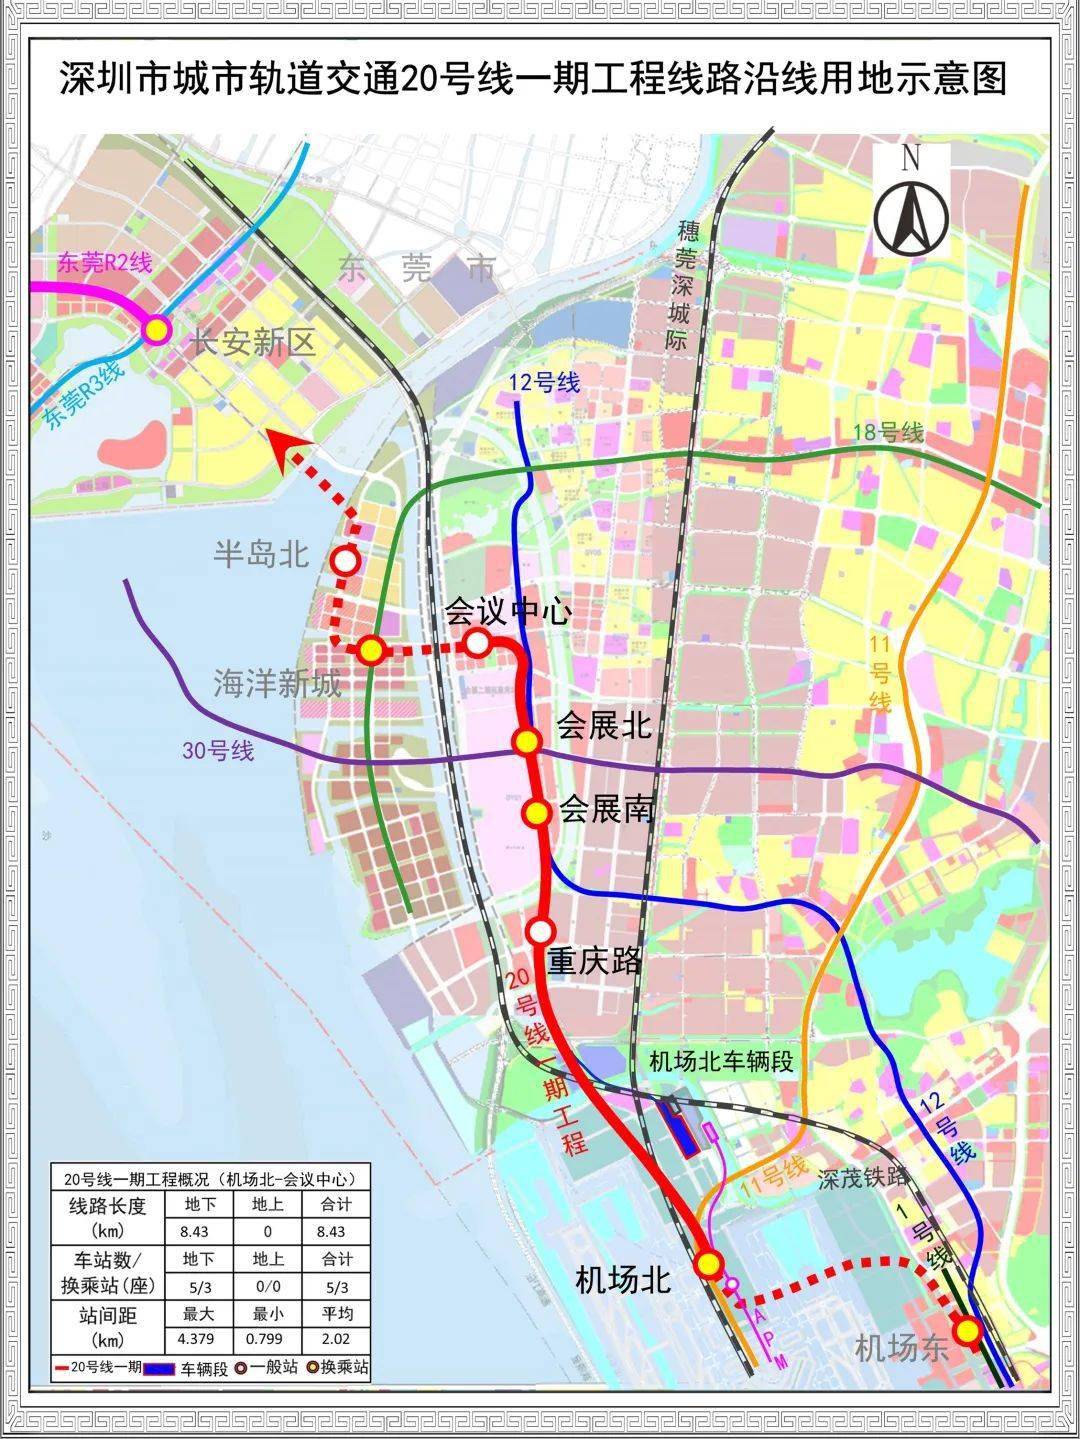 深圳首条全自动运行地铁线路20号线一期本月接车!